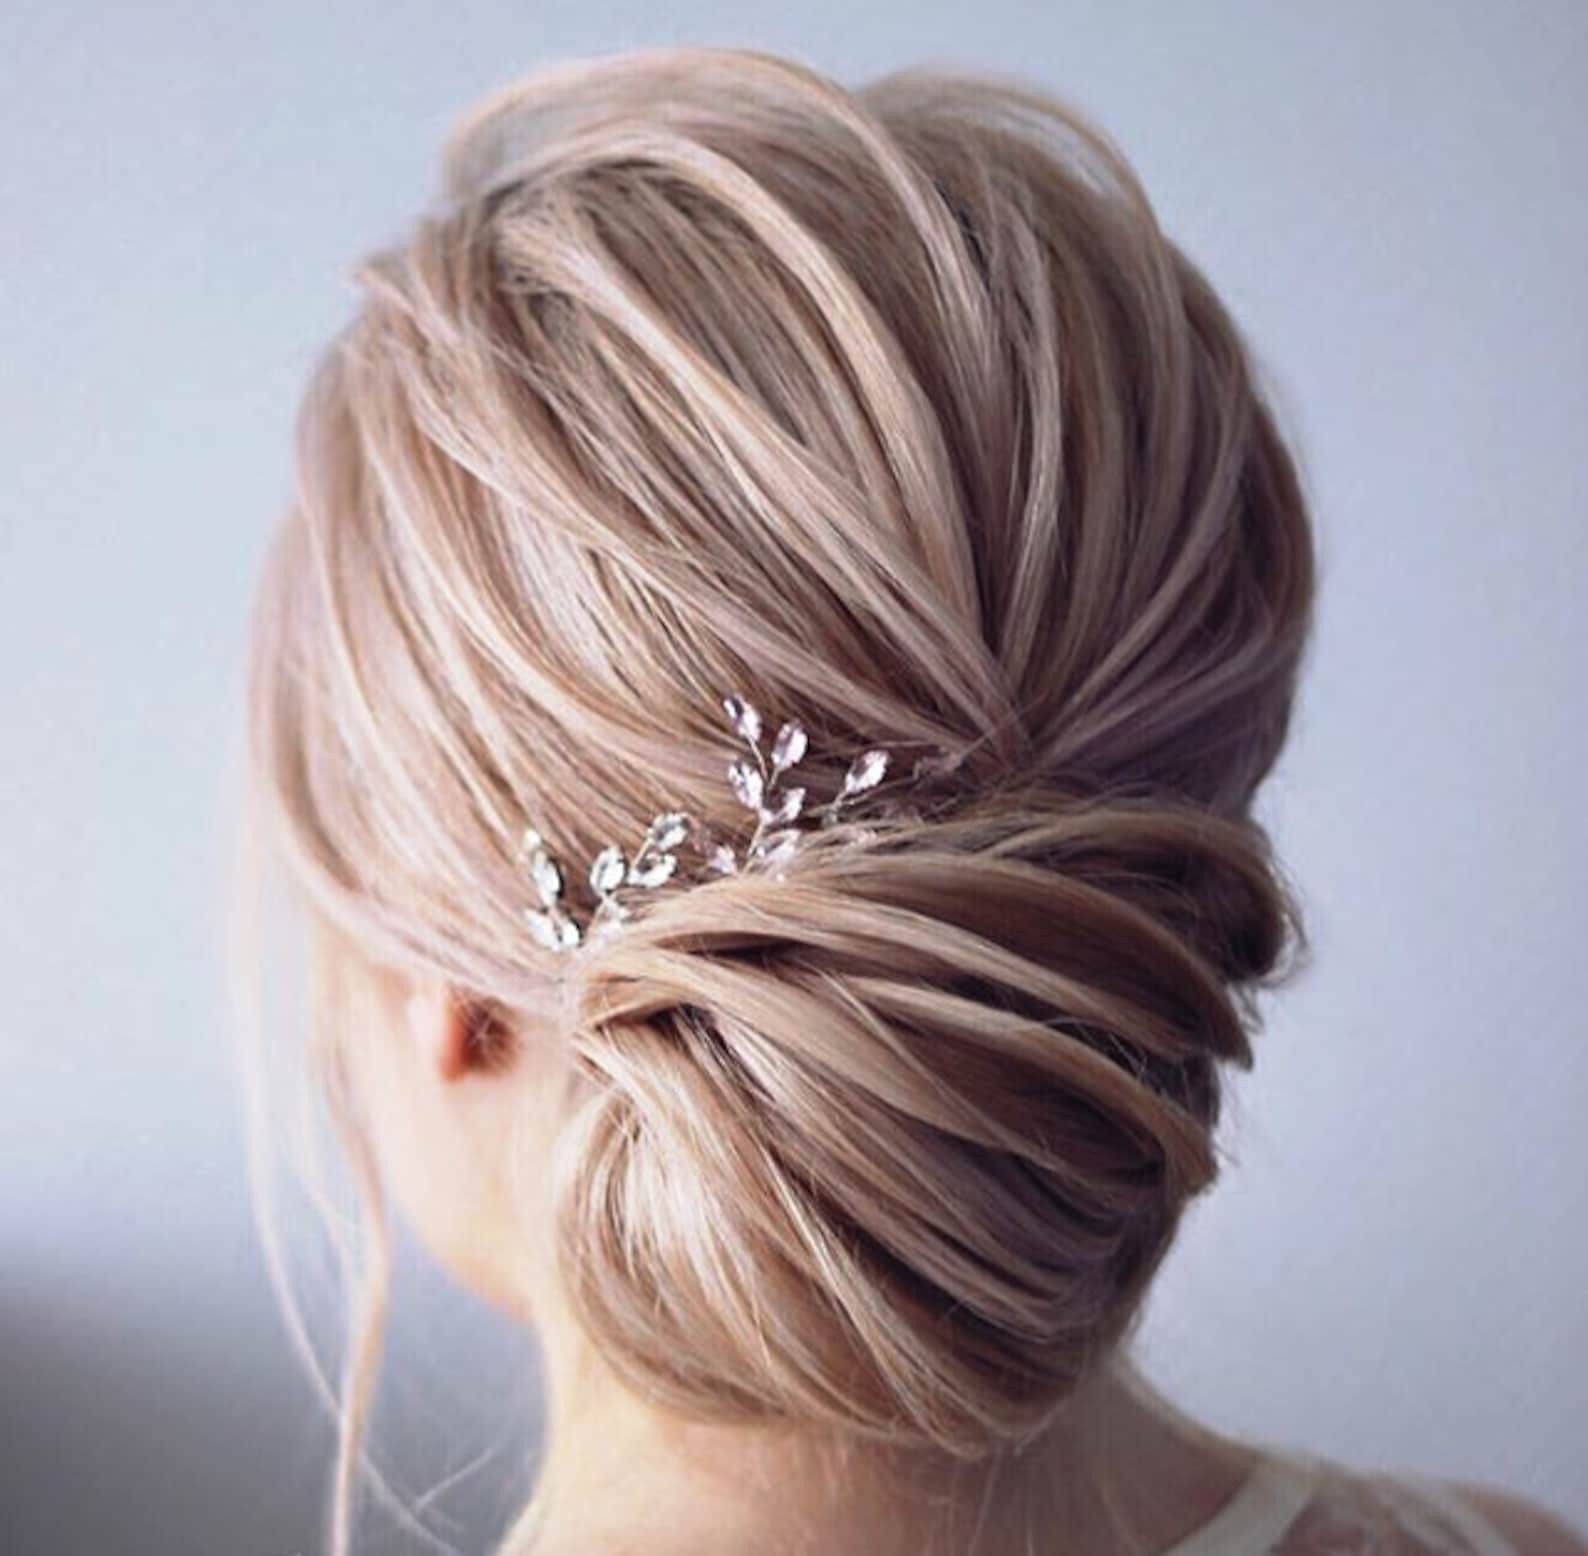 Bridal Hair Pins Wedding Head Piece Silver Swarowski Crystal | Etsy